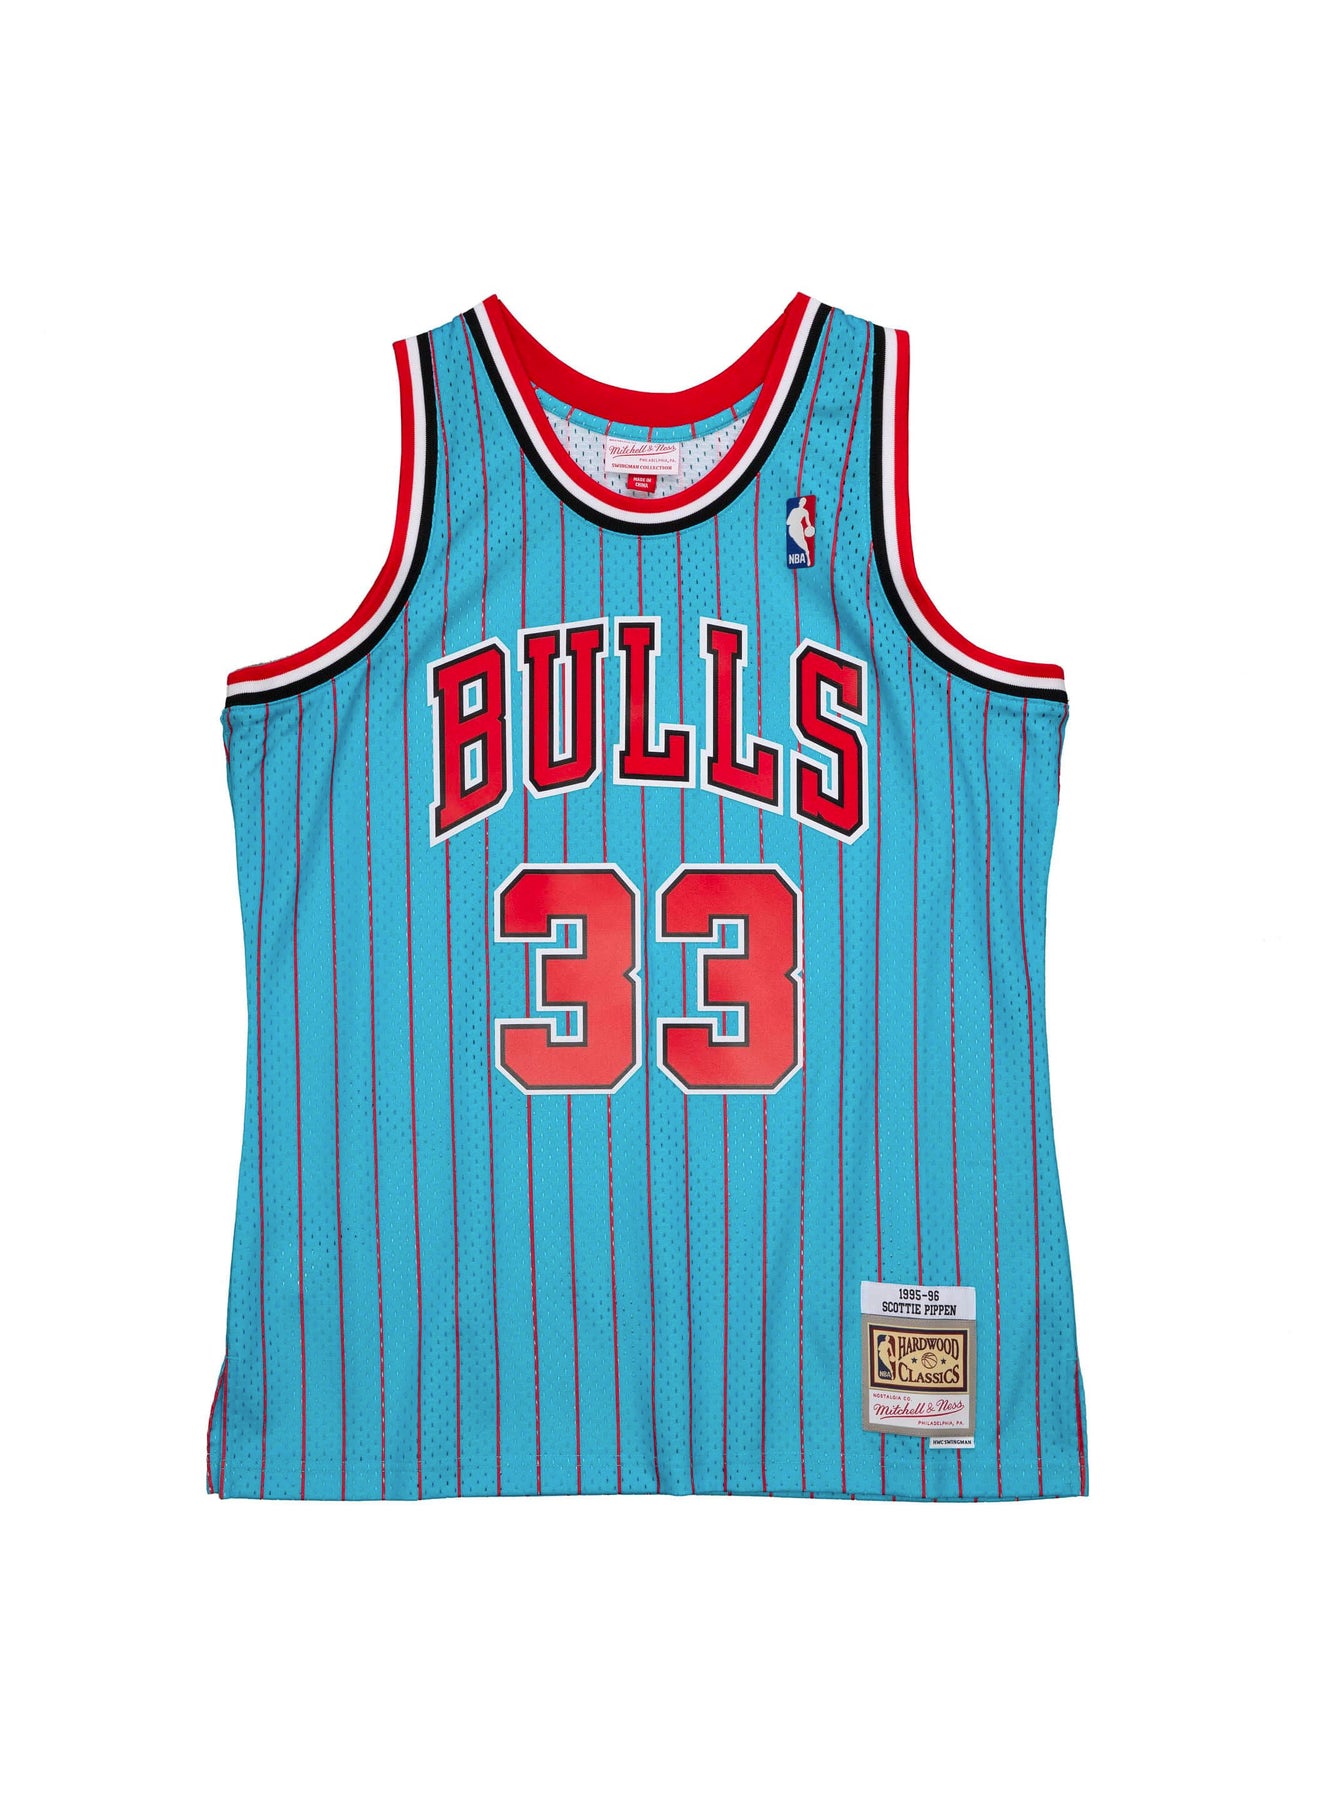 Toni Kukoc Bulls Jersey - Toni Kukoc Chicago Bulls Jersey - bulls pippen  trikot 